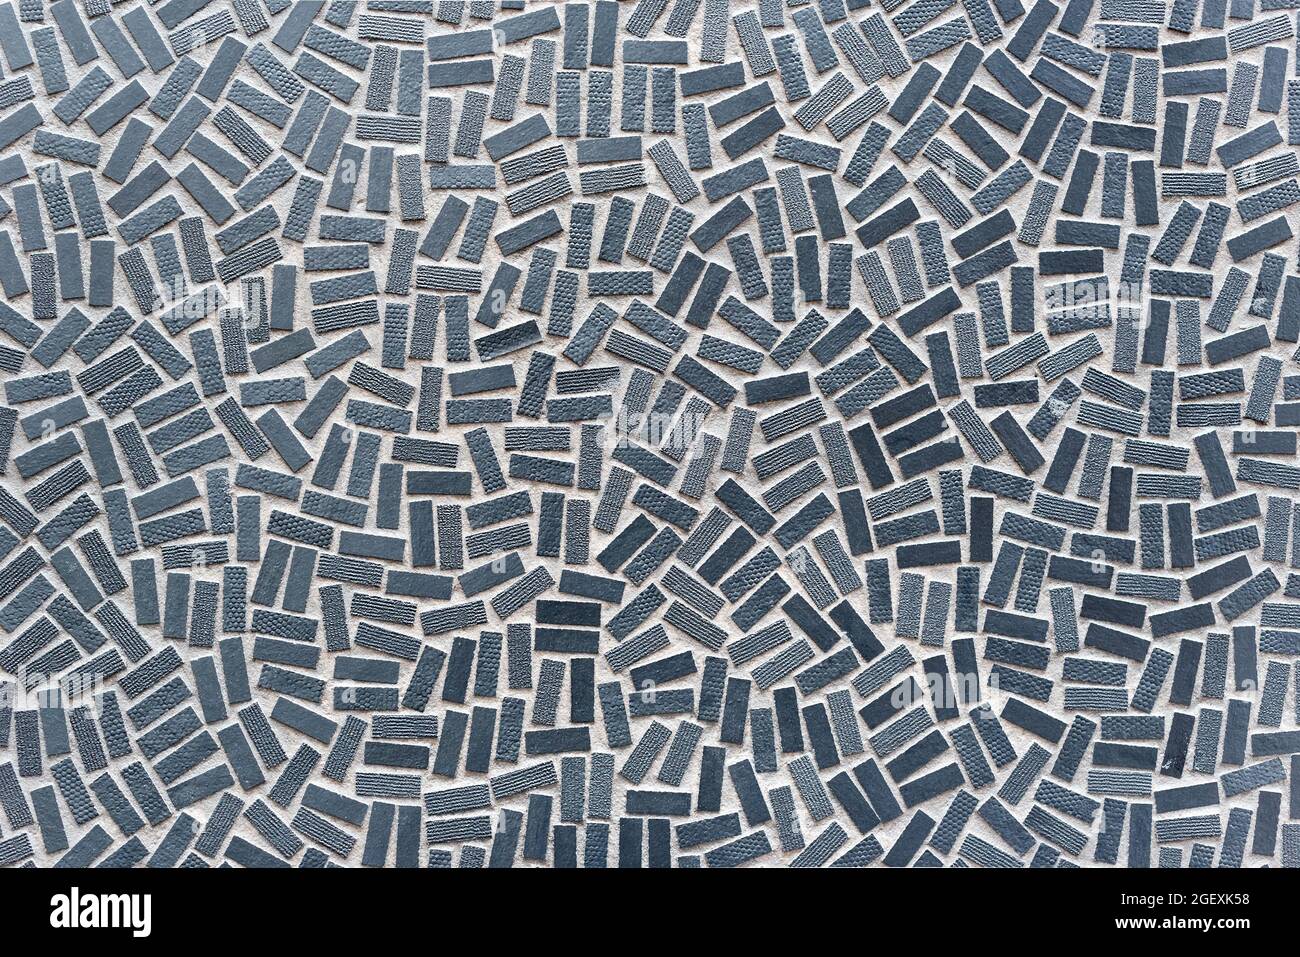 Texture d'arrière-plan plein cadre de carreaux de mosaïque gris rectangulaires en pointillé dans une dispersion aléatoire et un motif pour les concepts de décor Banque D'Images